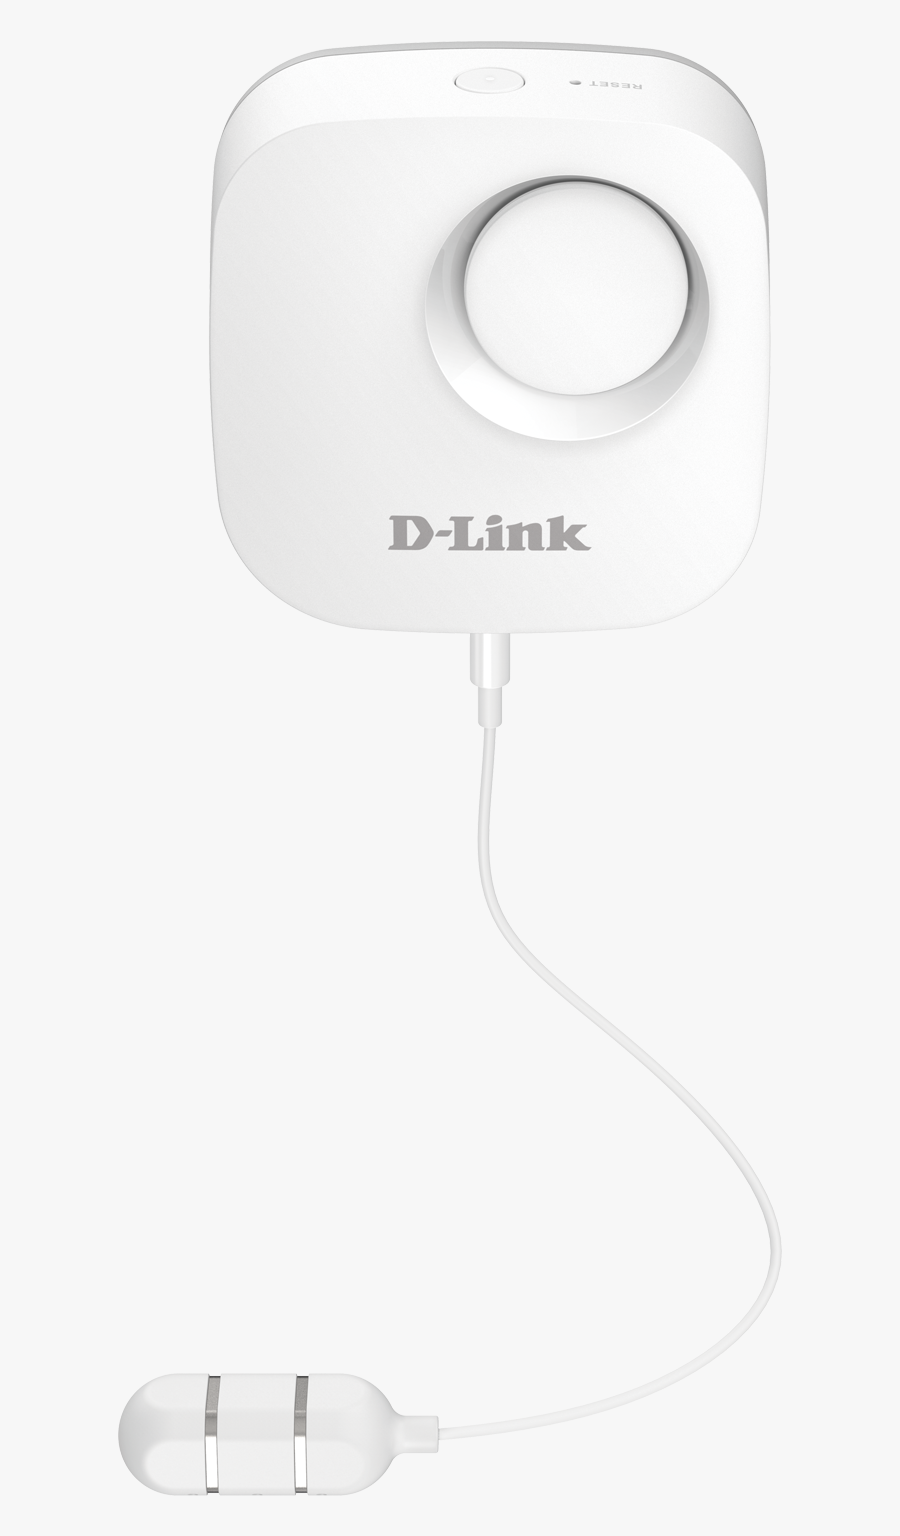 D Link, Transparent Clipart